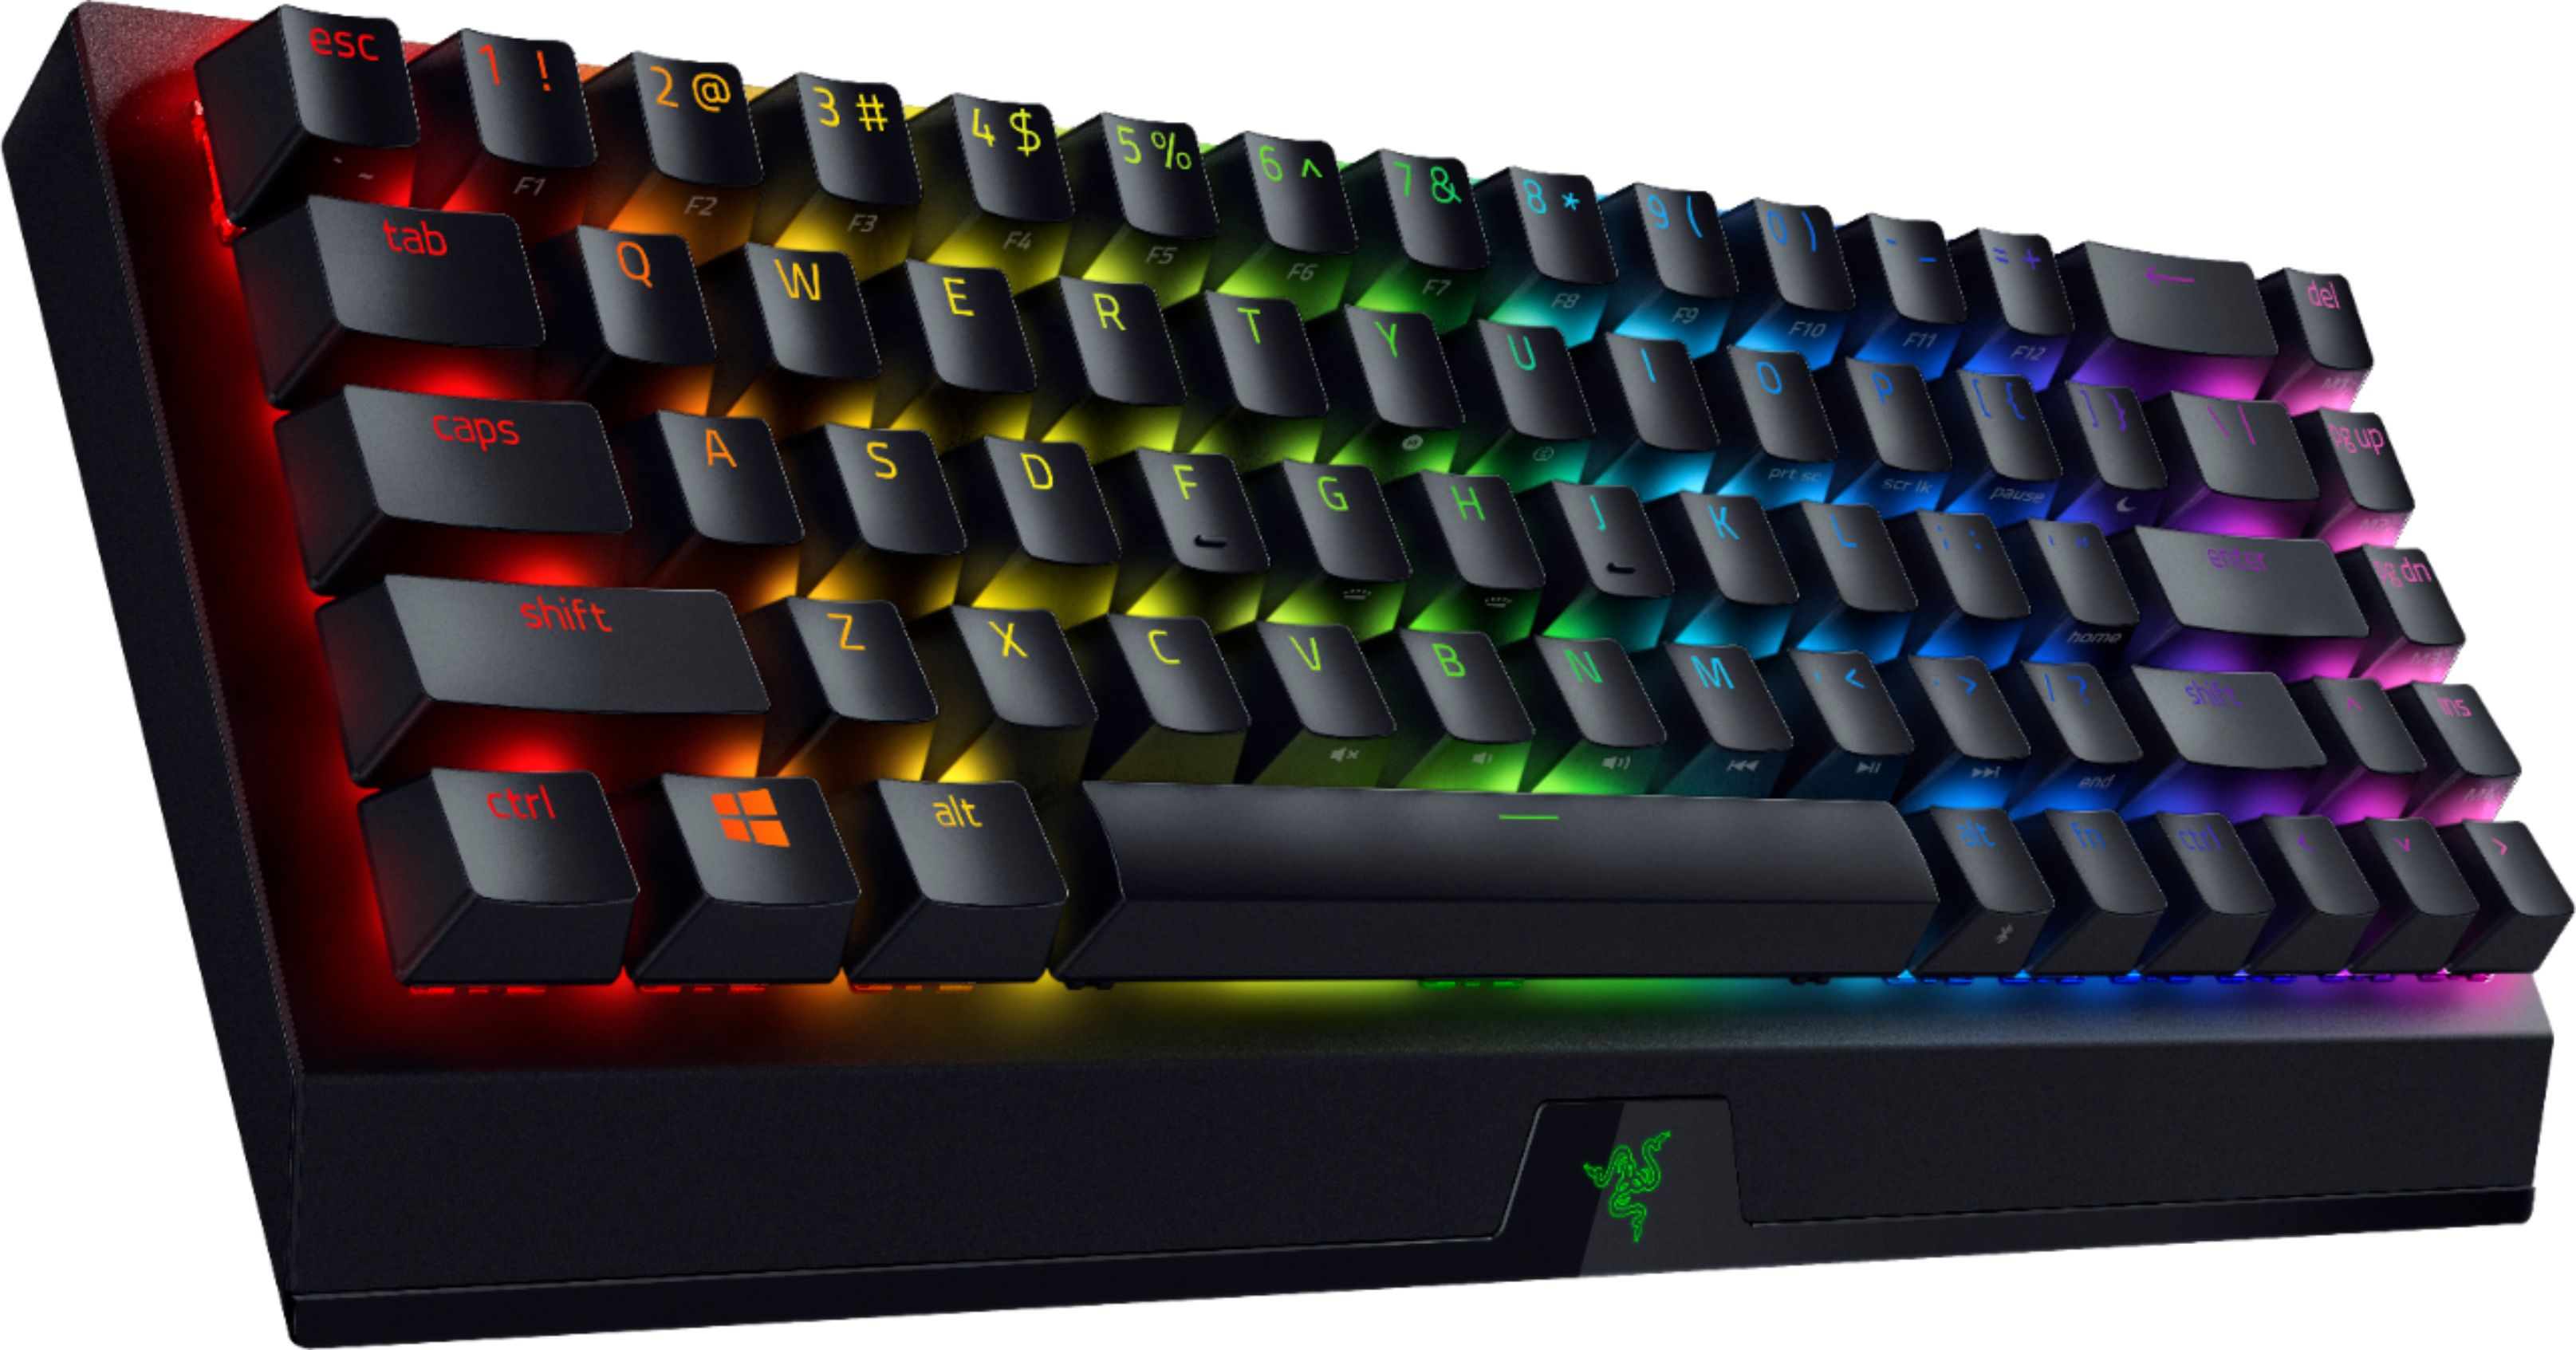 即納特典付き Razer BlackWidow V3 Mechanical Gaming Keyboard: Green Mechanical  Switches Tactile ＆ Clicky Chroma RGB Lighting Compact Form Factor  Programmab